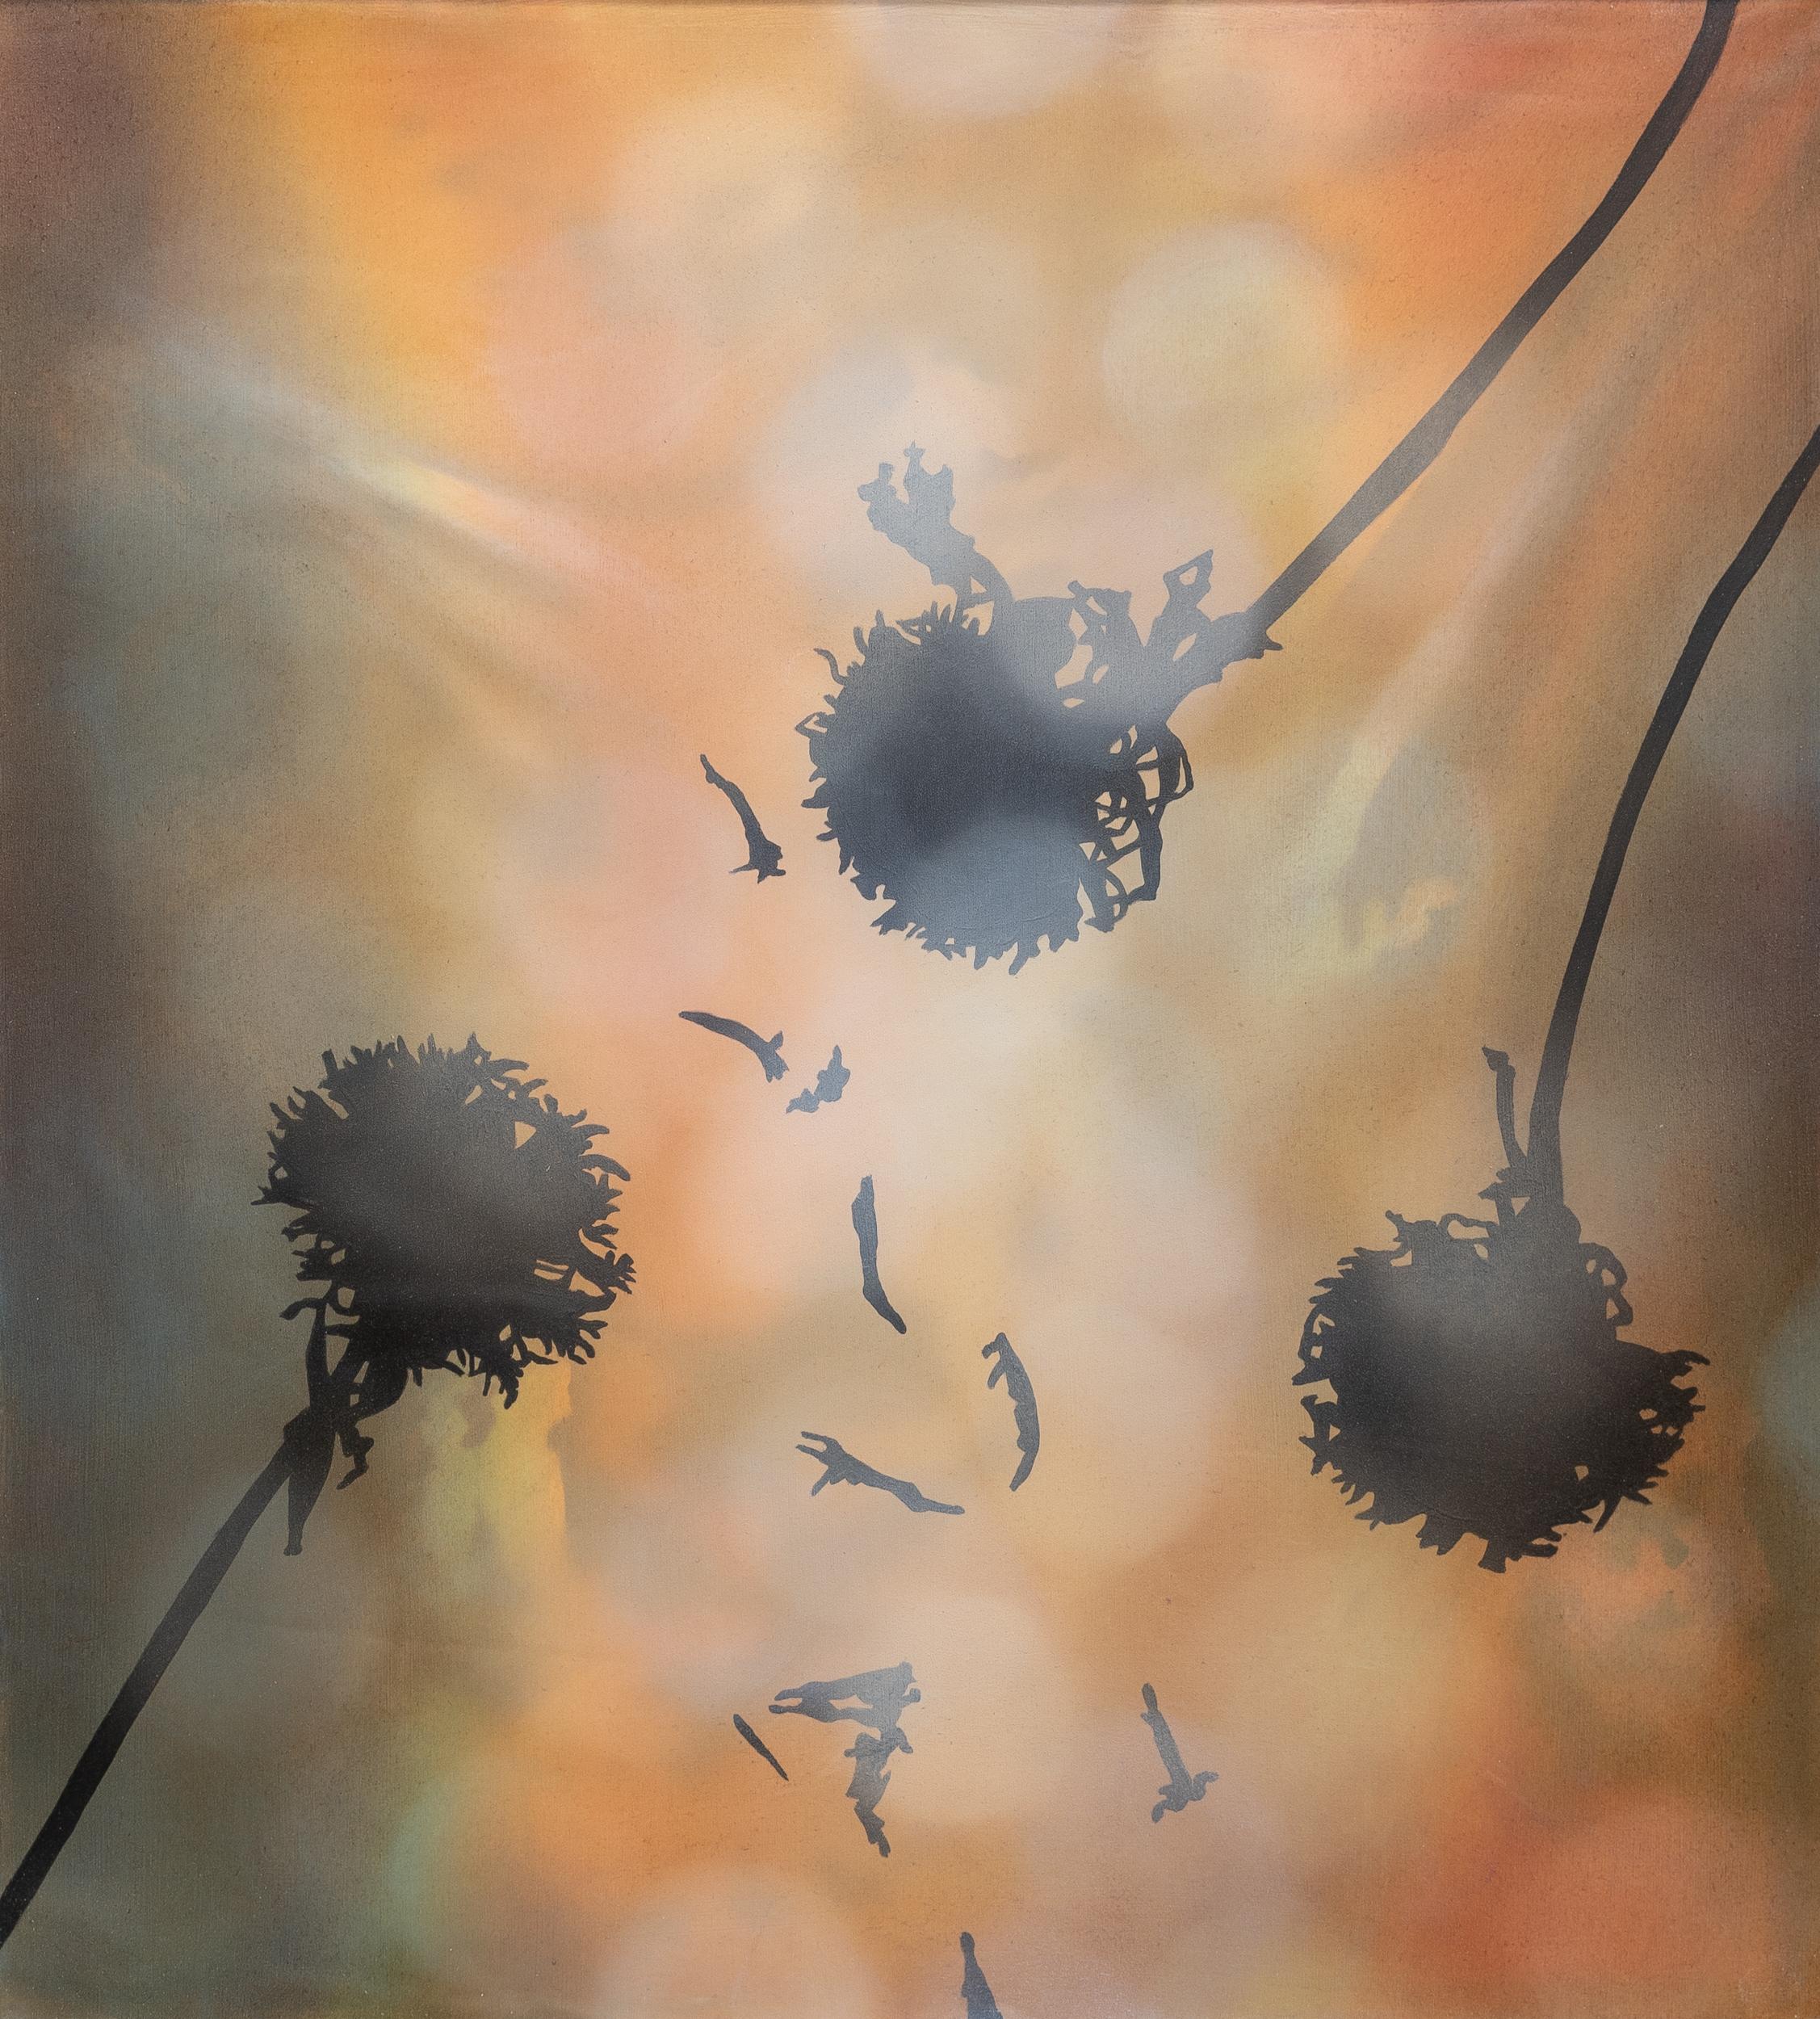 CHROMASEEDS - Gerahmtes Gemälde in Mischtechnik von 3 Gaillardia mit Blütenblättern